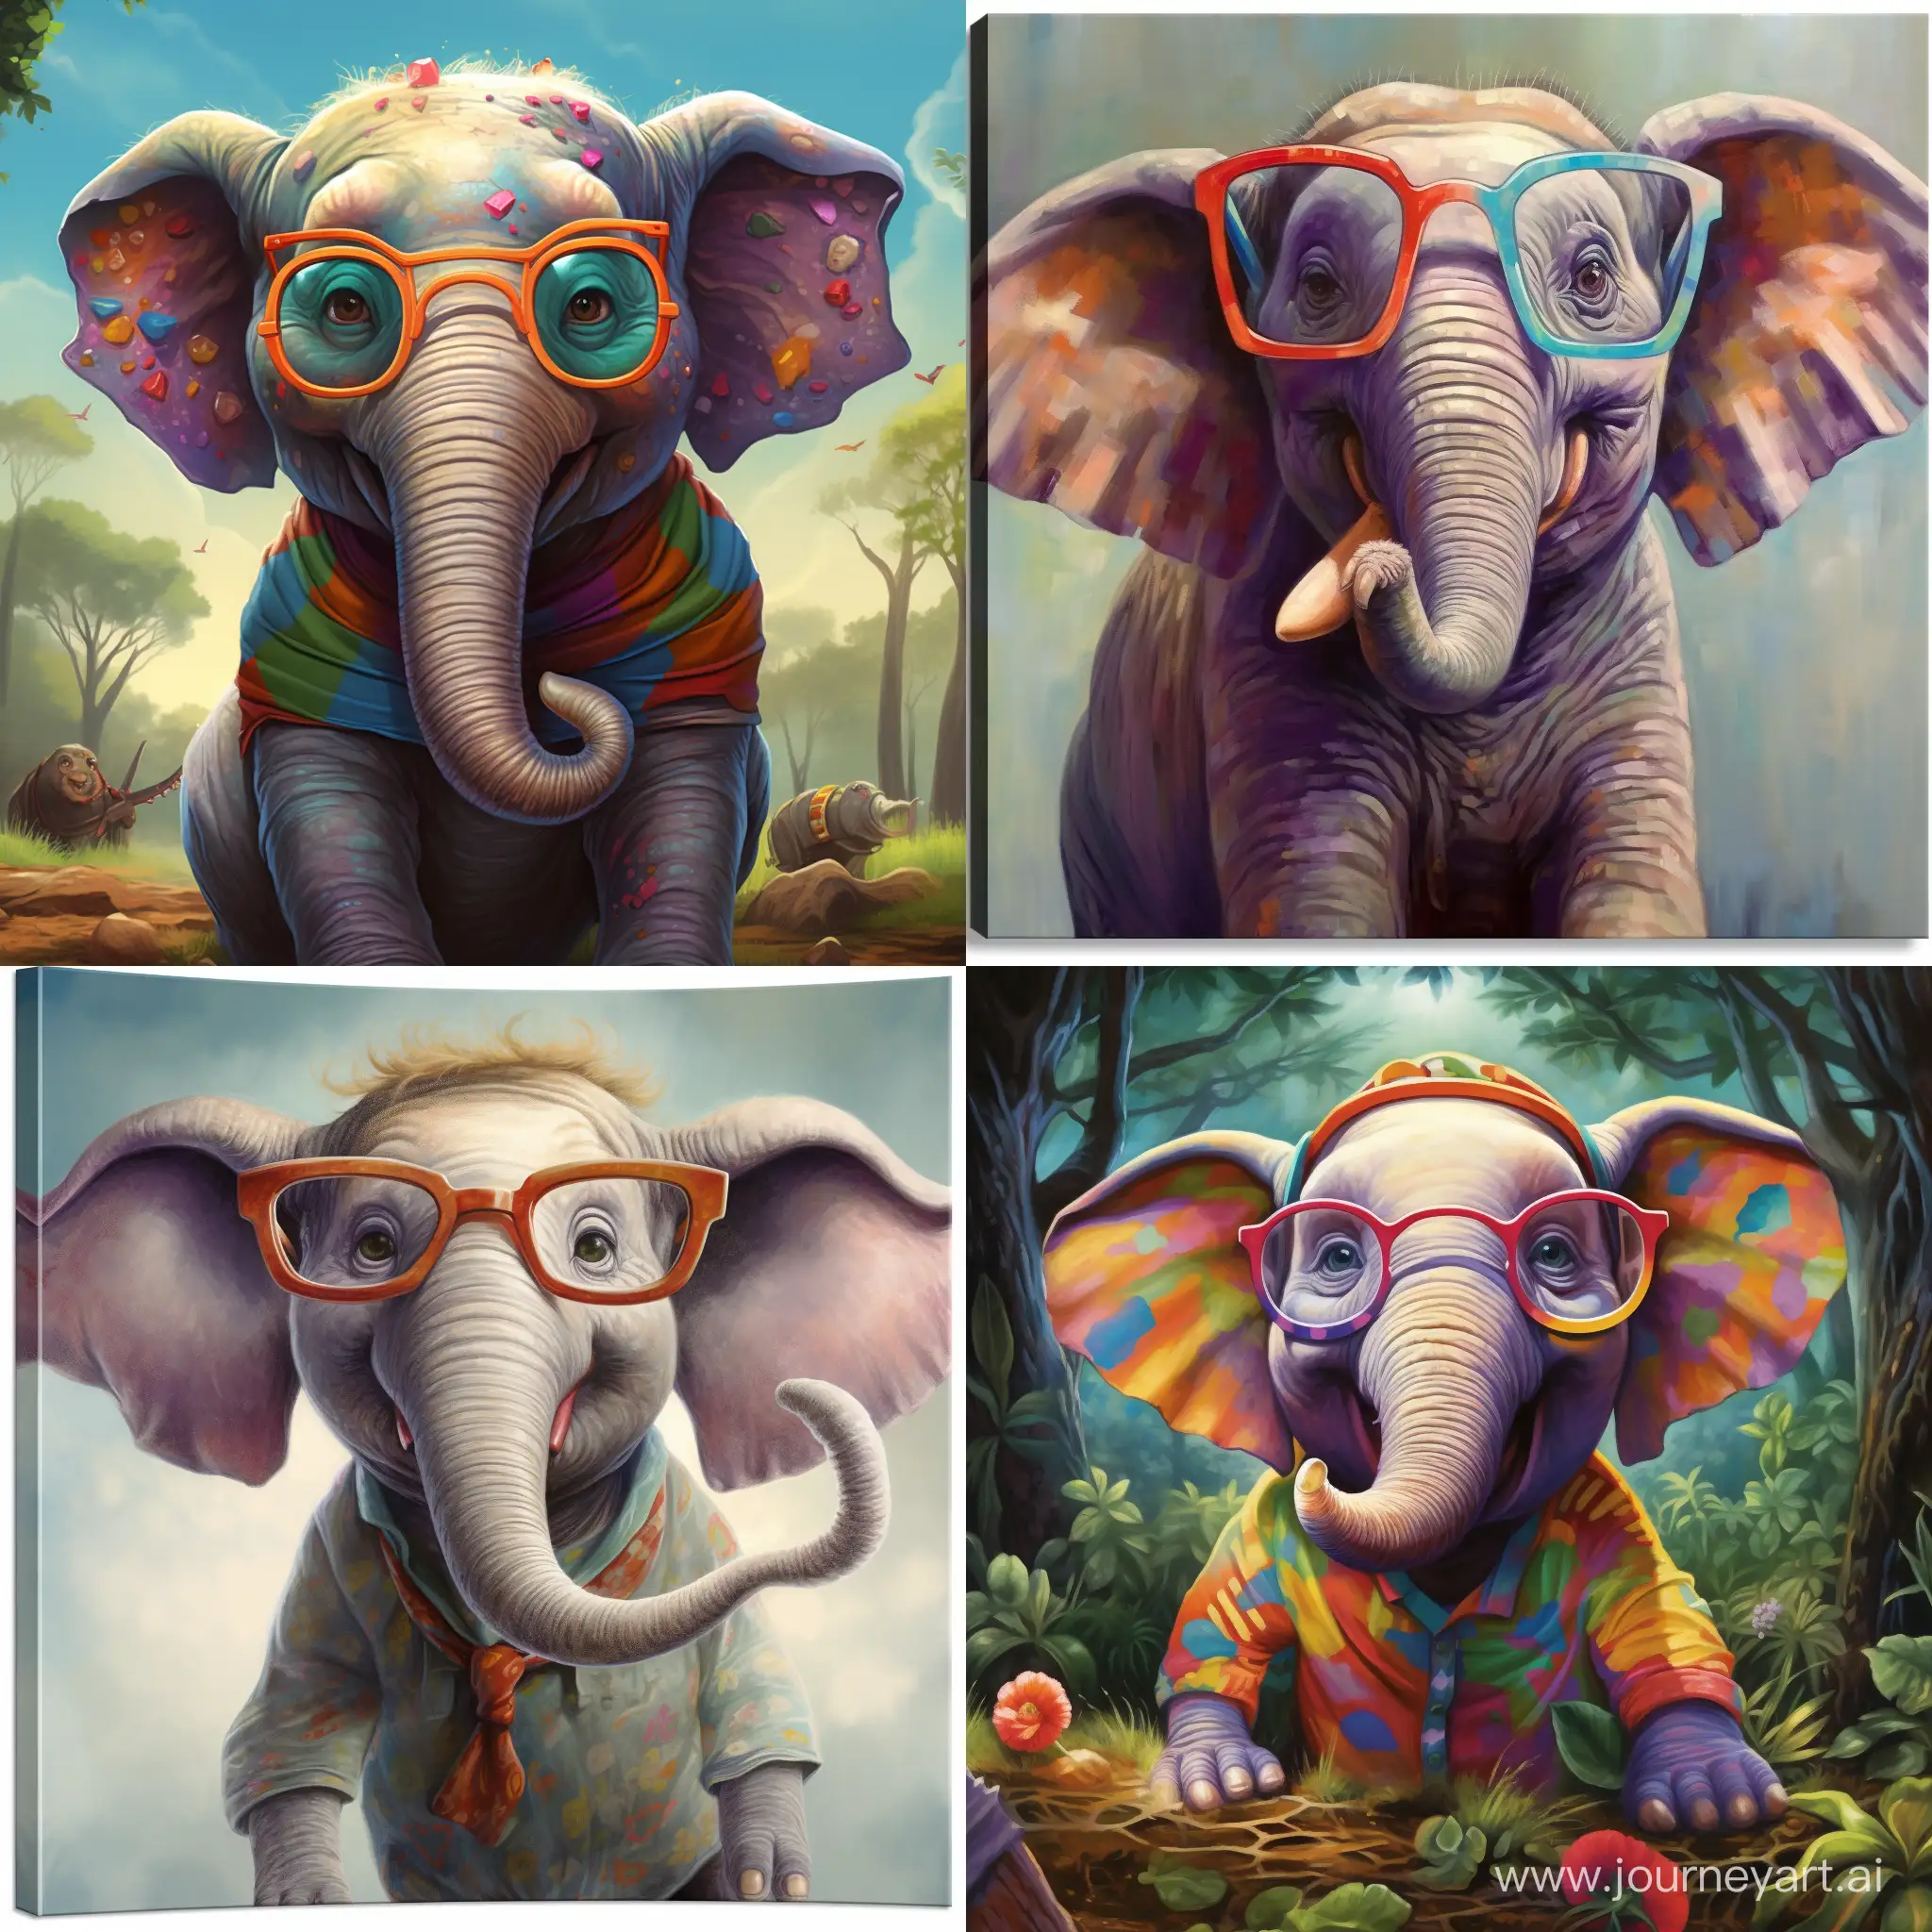 Enthusiastic-Elephant-Explains-Lifes-Details-Through-Colorful-Giant-Glasses